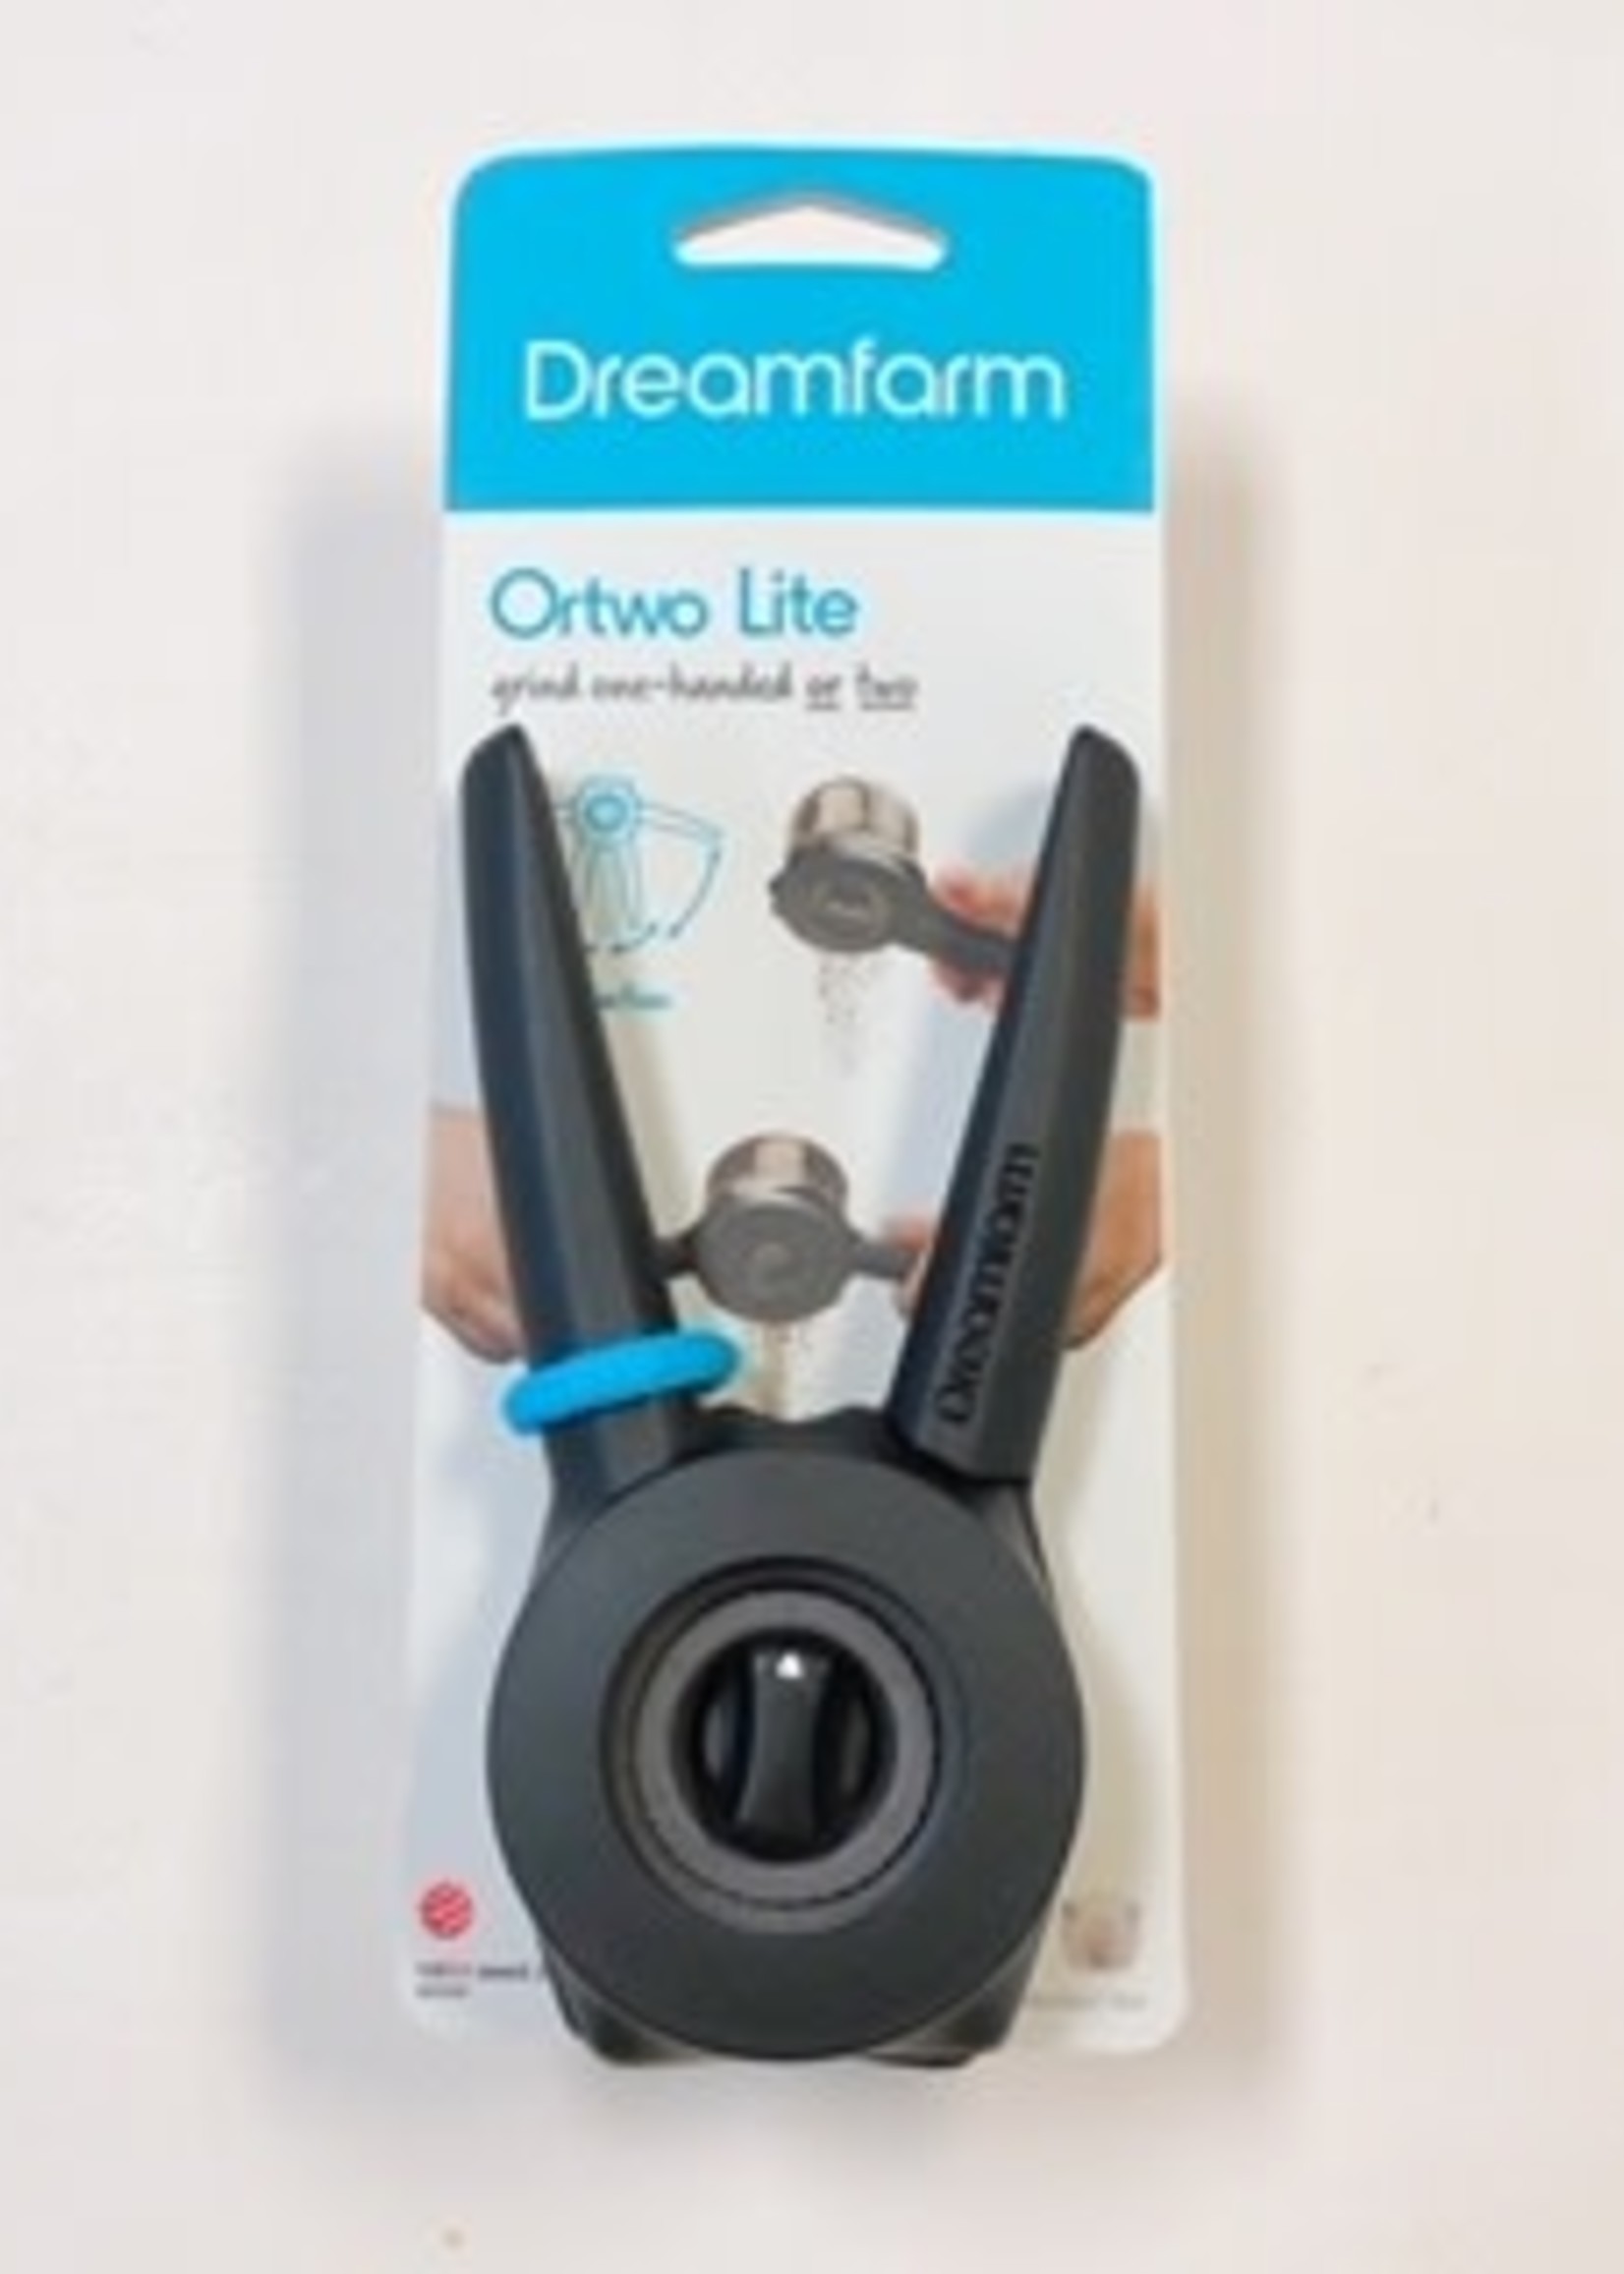 Dreamfarm Ortwo Lite - Black